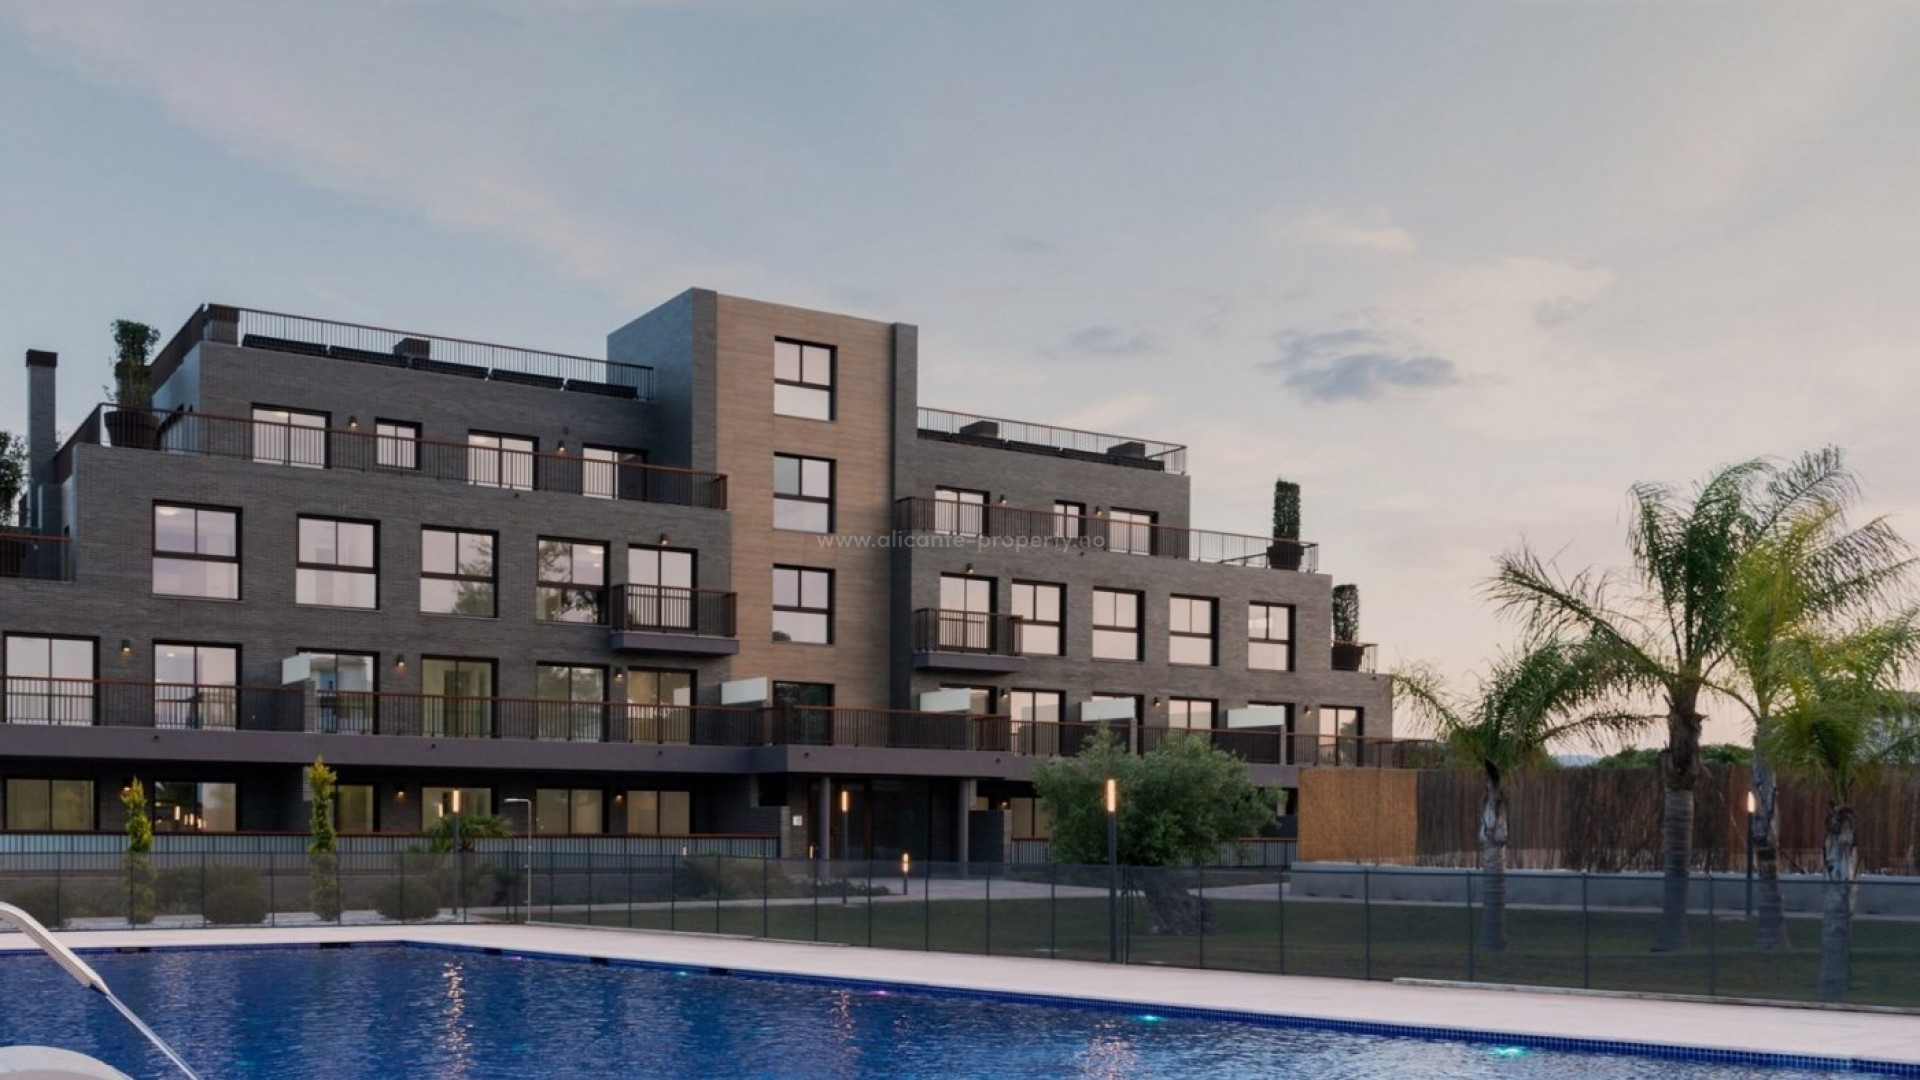 Moderne leiligheter i Denia 400 meter fra Les Deveses-stranden, 1/2/3 soverom, 1/2 bad, flotte fritids- og sportsattraksjoner, nær golfbaner og ridning